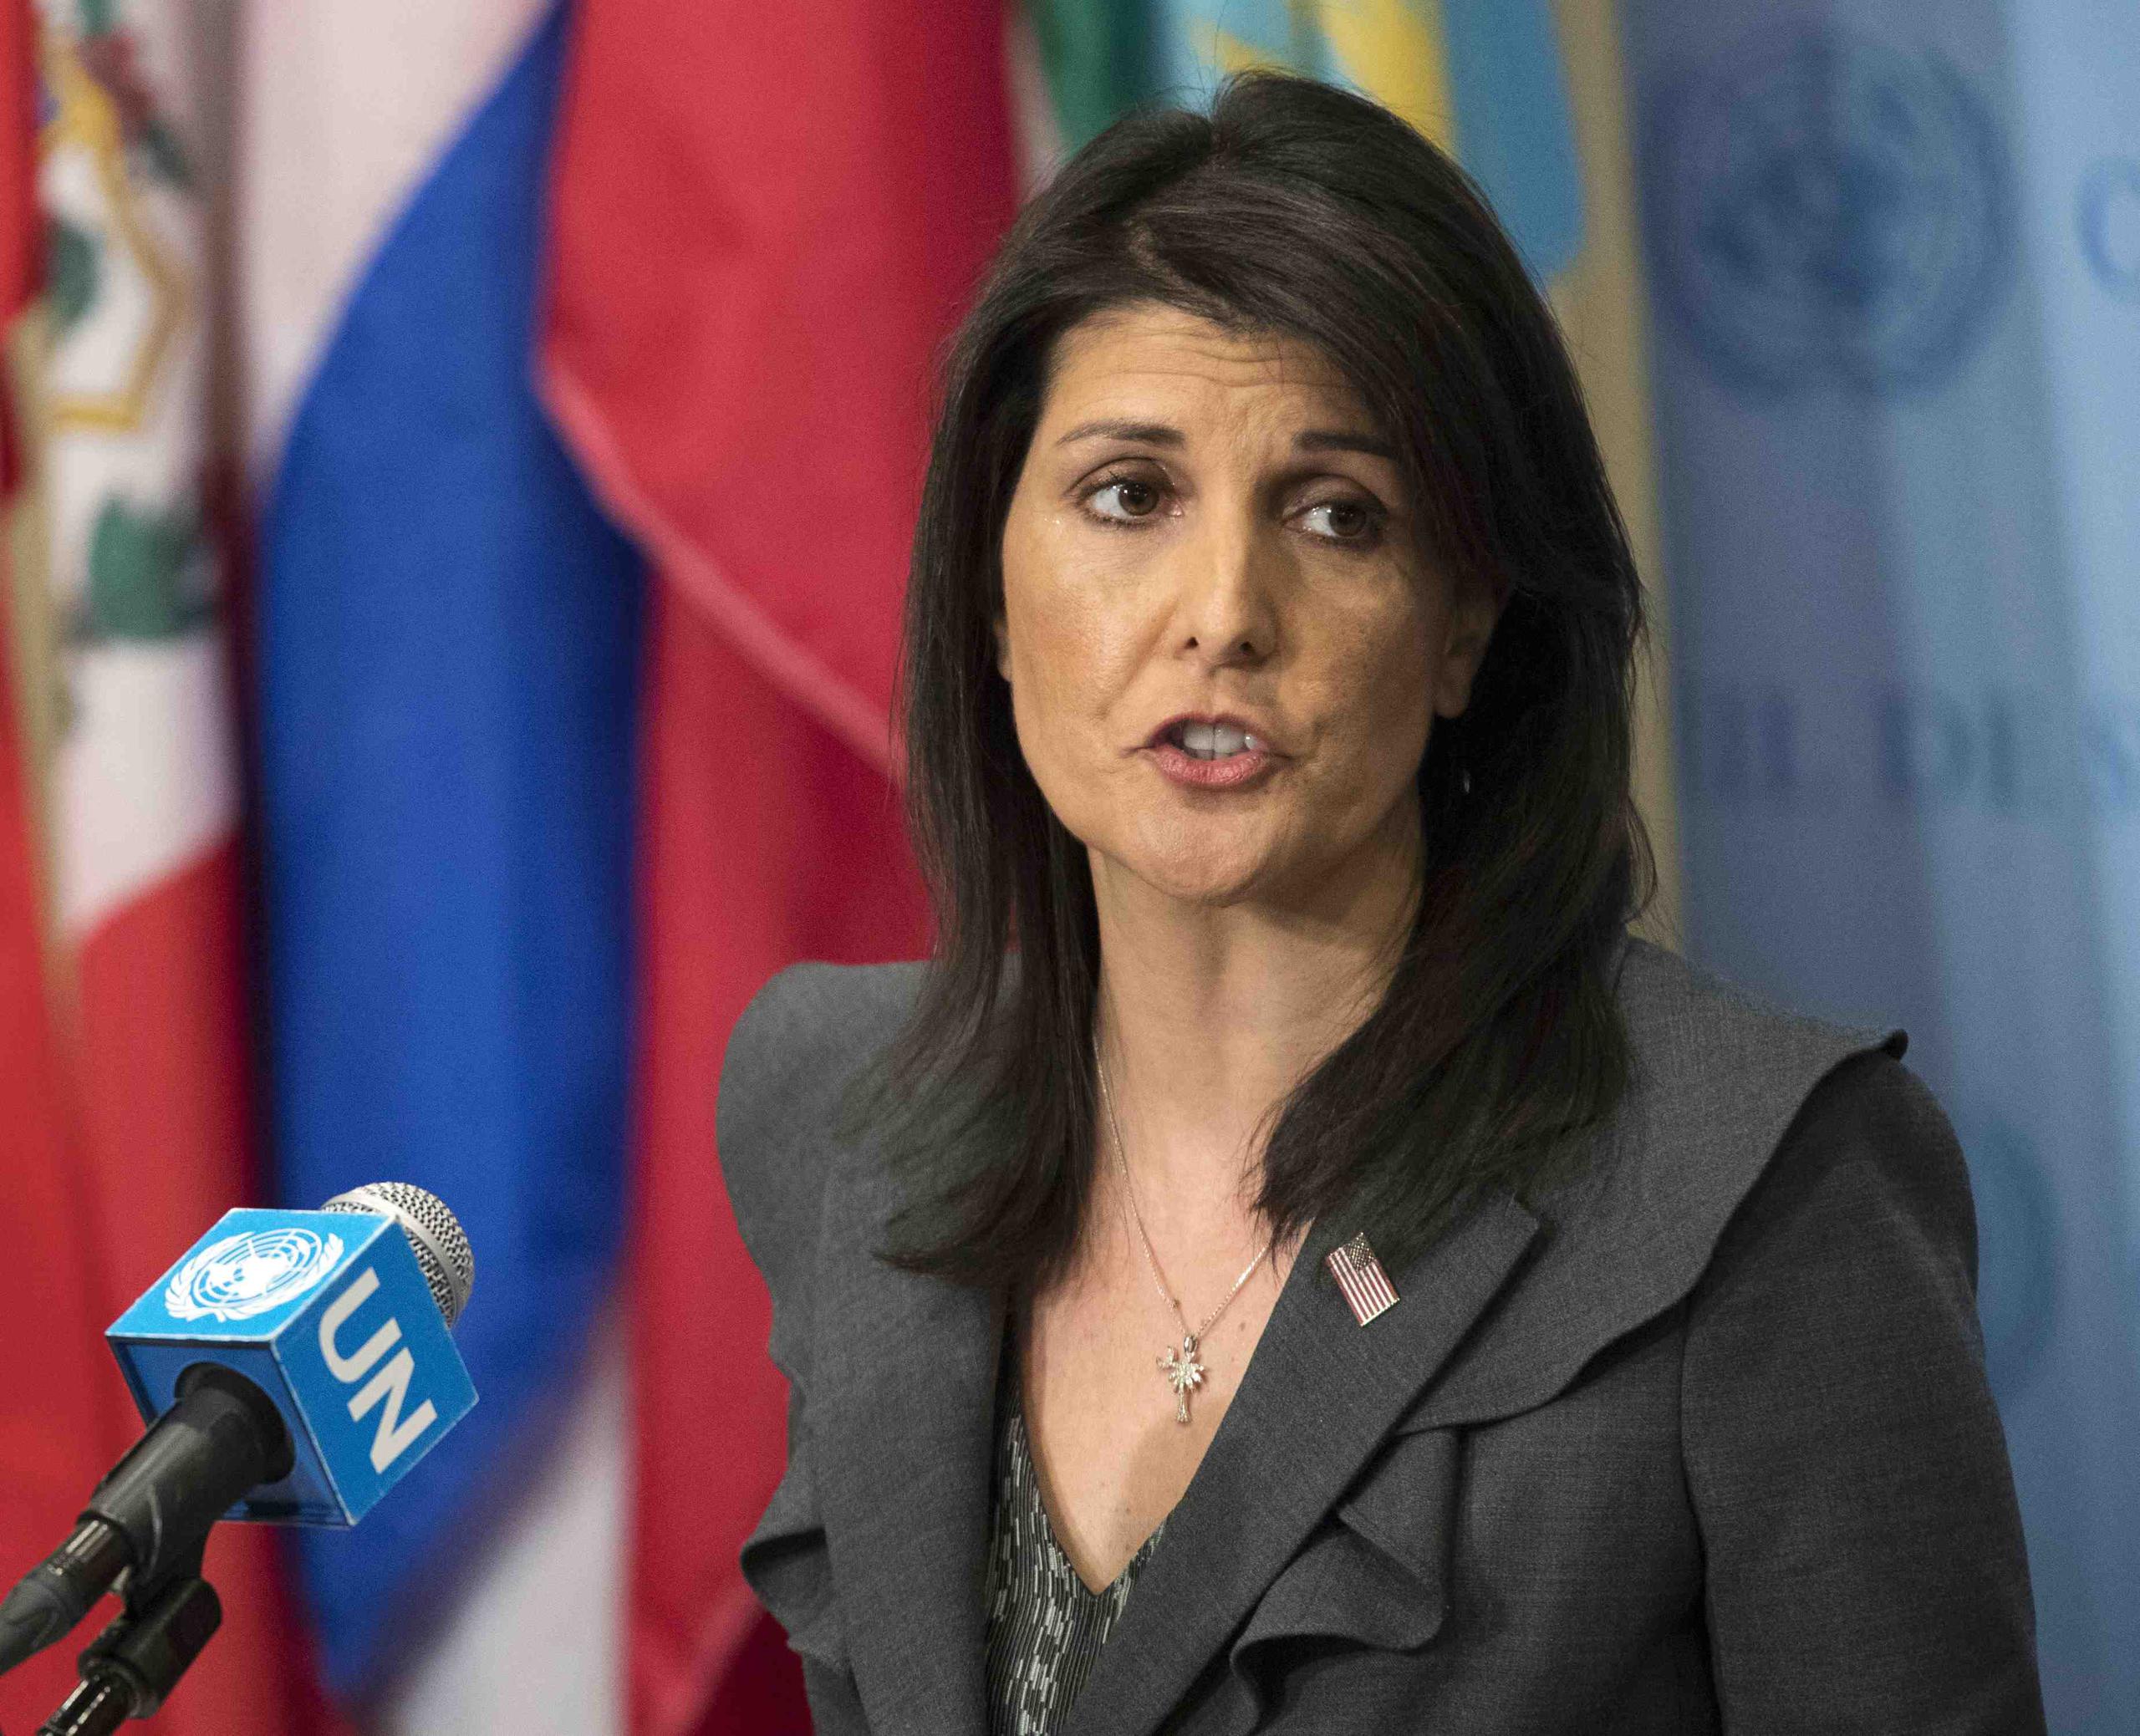 La embajadora de Estados Unidos ante Naciones Unidas, Nikki Haley, anunció la retirada el martes y criticó al consejo por “su prejuicio crónico contra Israel”. (AP)